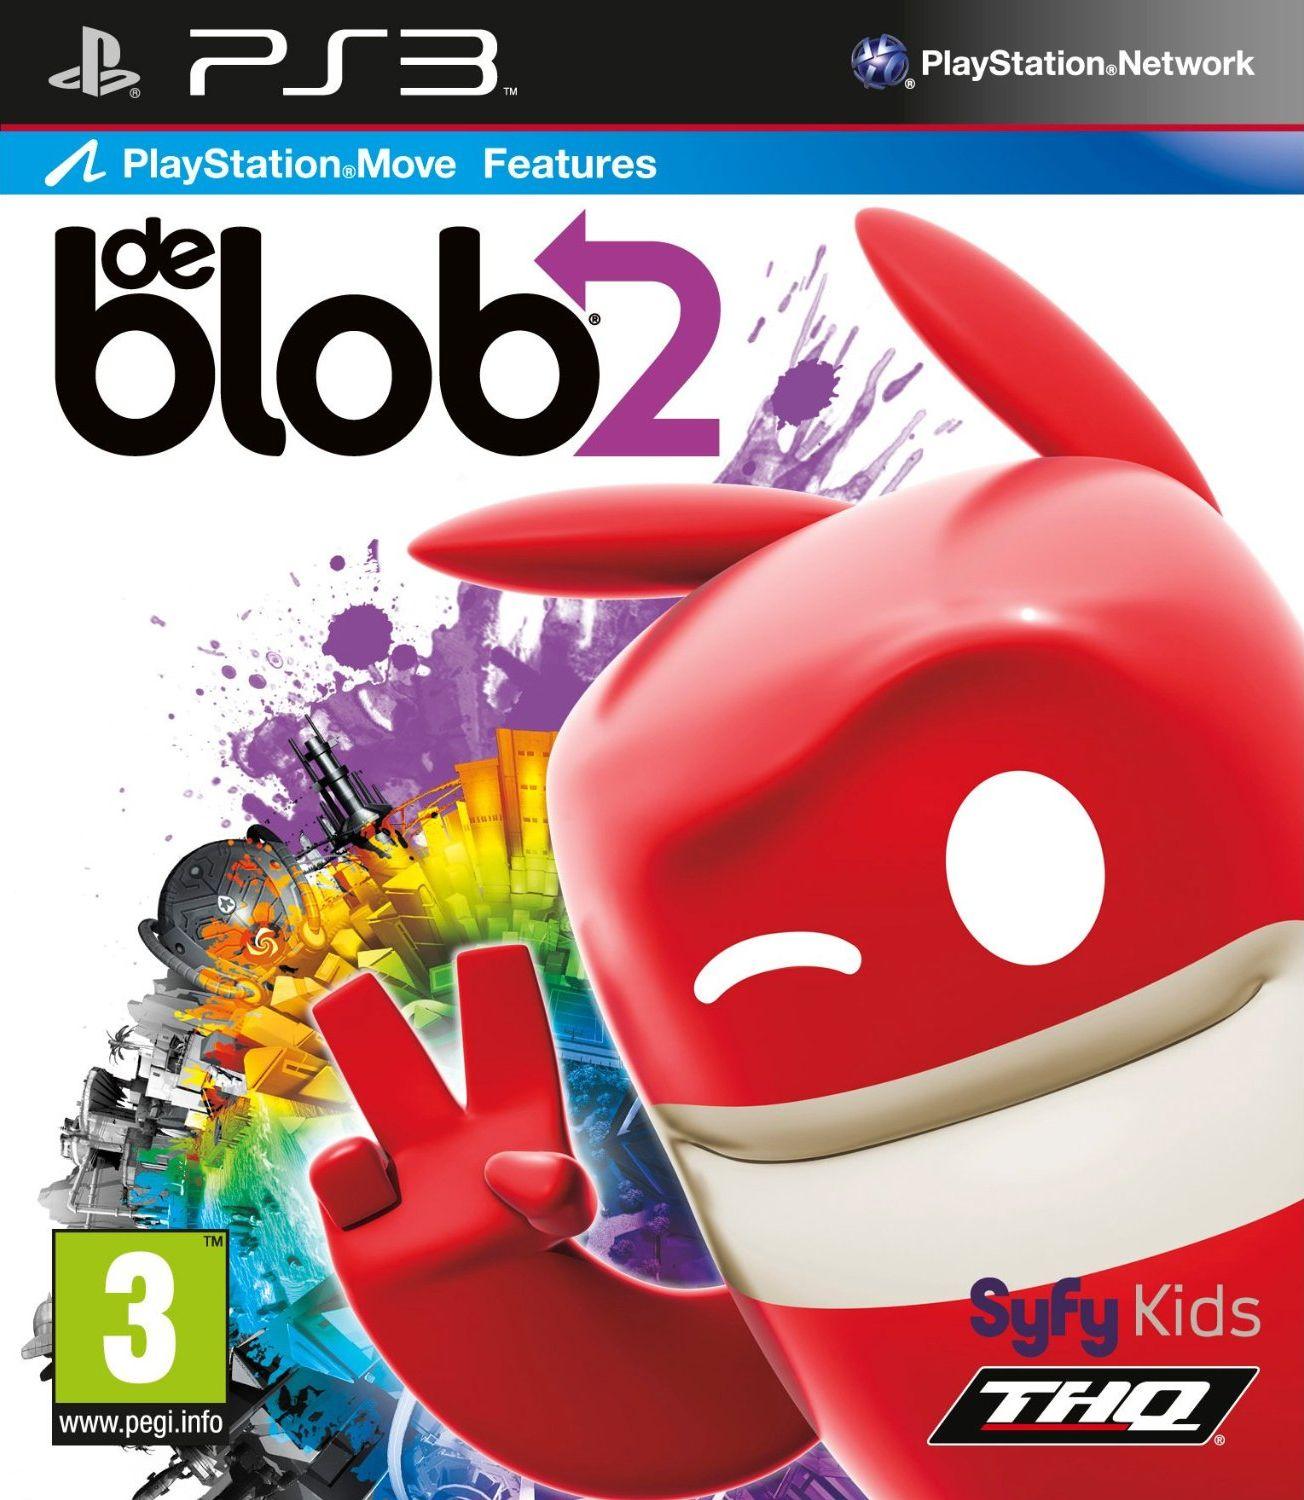 de Blob 2 (Game)